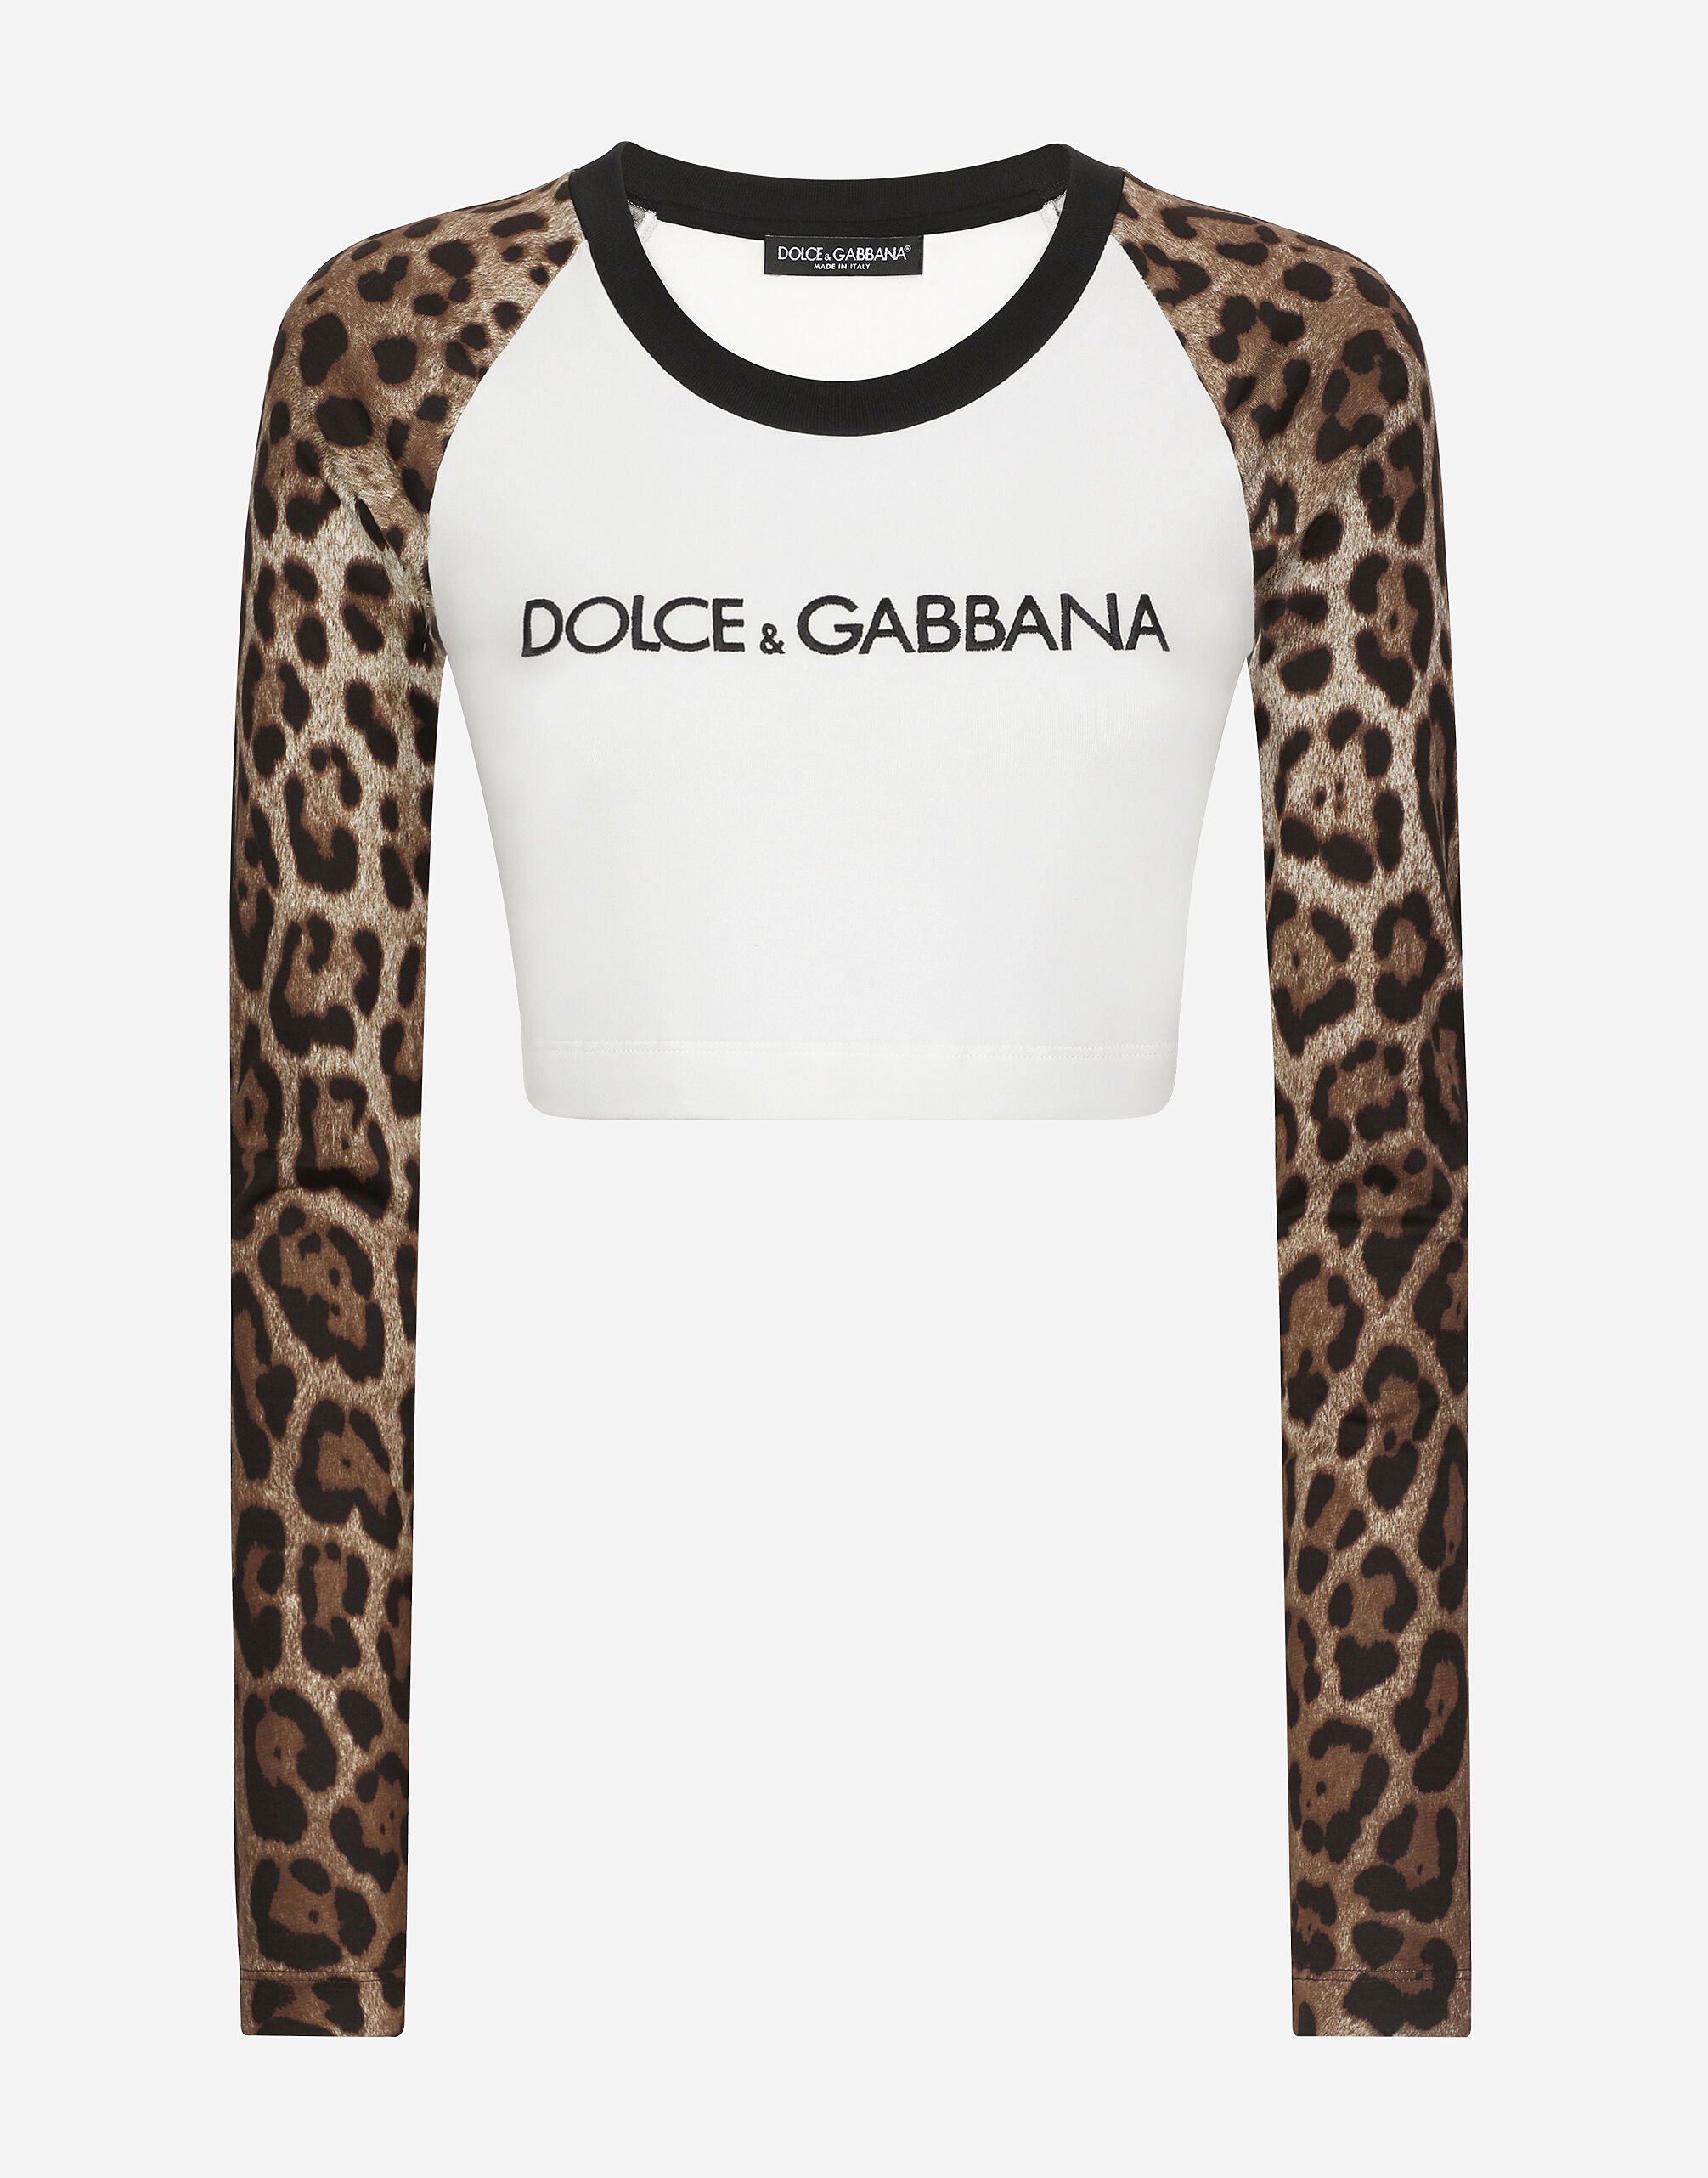 Dolce & Gabbana T-shirt manica lunga con logo Dolce&Gabbana Oro BB7287AY828